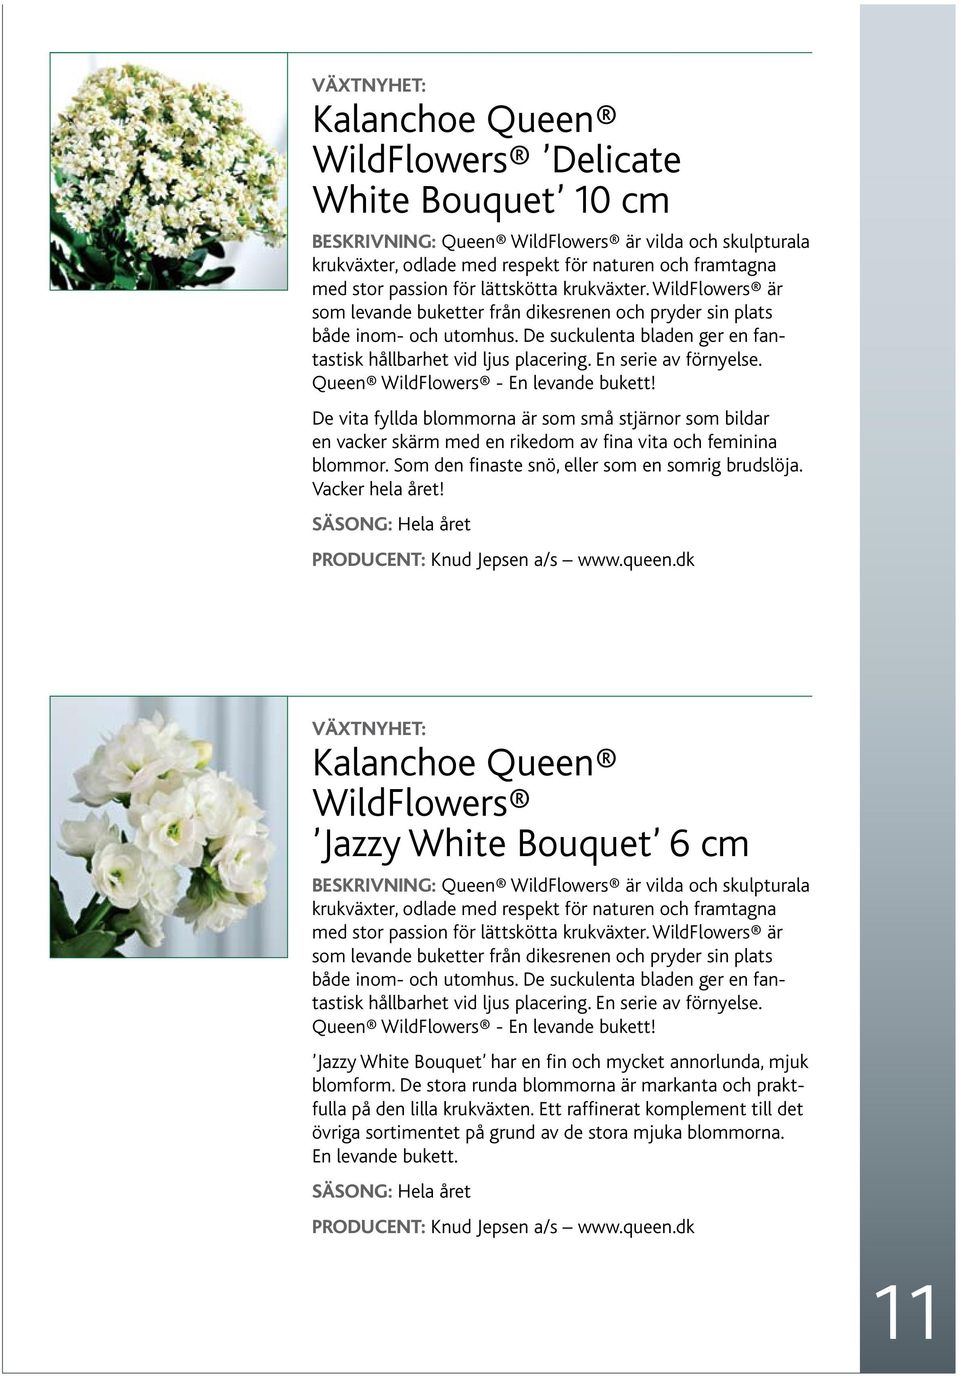 En serie av förnyelse. Queen WildFlowers - En levande bukett! De vita fyllda blommorna är som små stjärnor som bildar en vacker skärm med en rikedom av fina vita och feminina blommor.